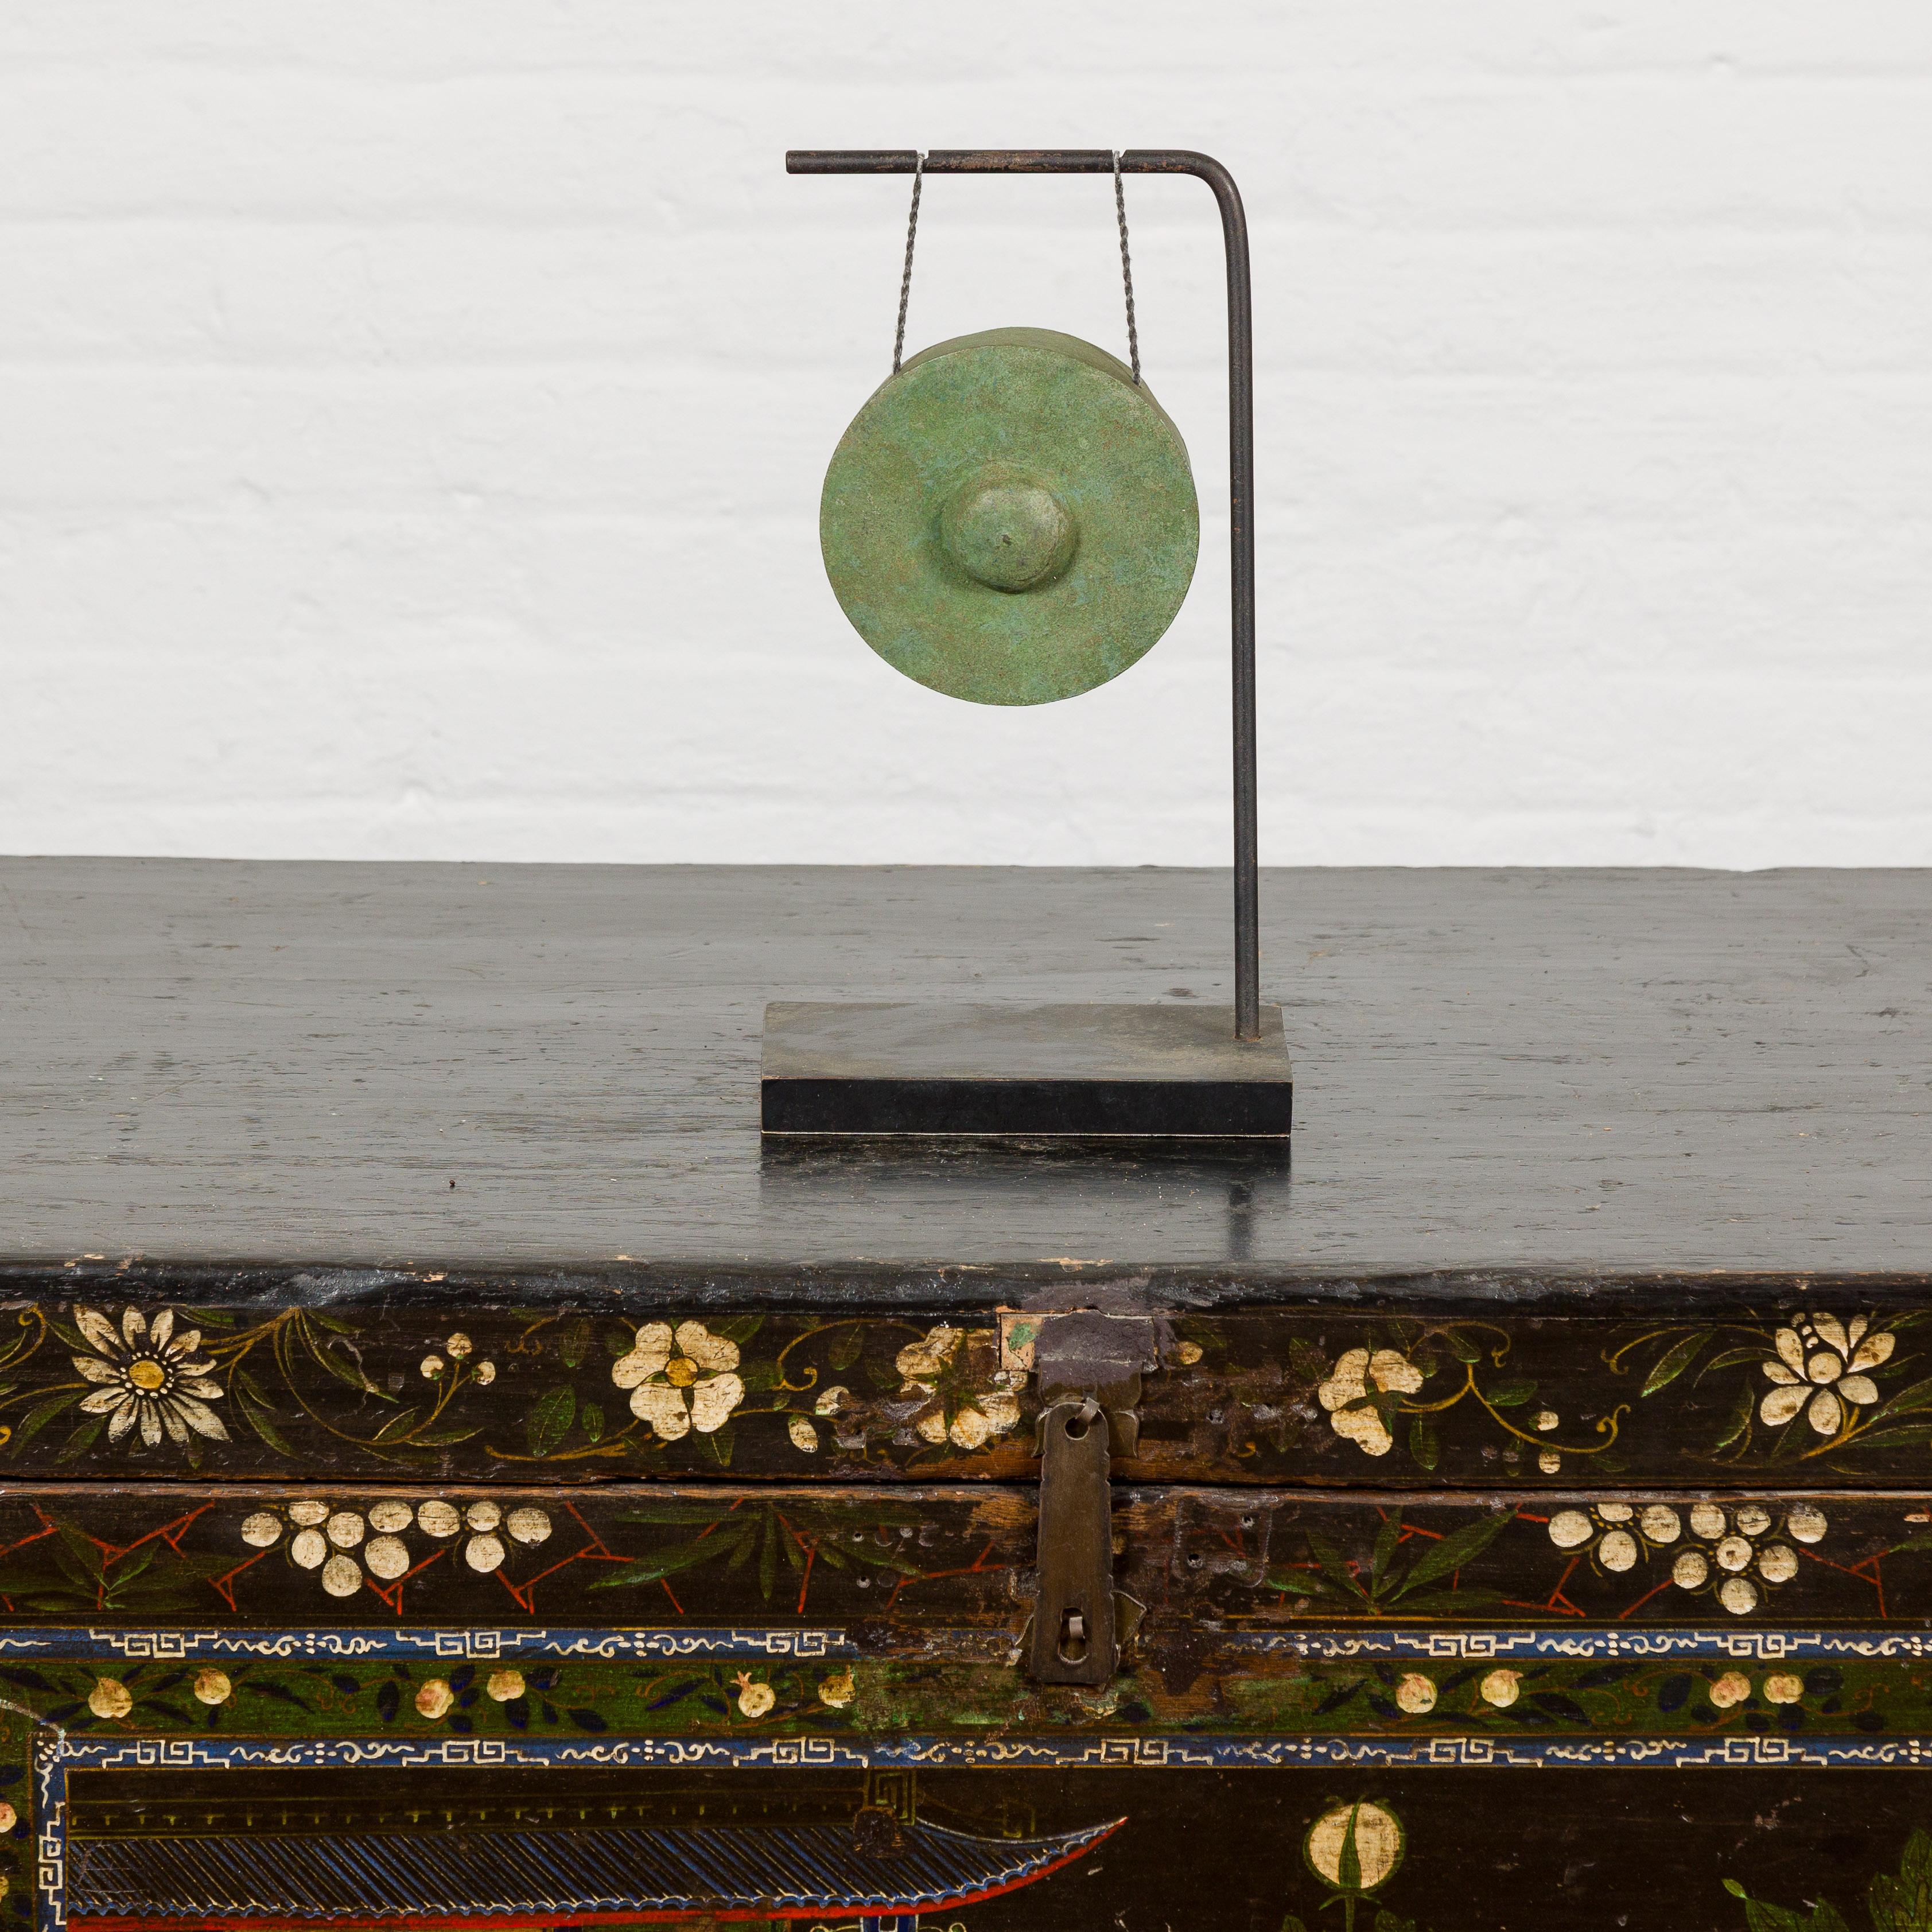 Ein zierlicher Bronzegong mit Grünspanpatina, montiert auf einem schwarzen Metallsockel. Dieser zierliche Bronzegong ist ein Zeugnis der Schönheit von Einfachheit und Handwerkskunst. Der Gong aus Bronze, der im komplizierten Wachsausschmelzverfahren